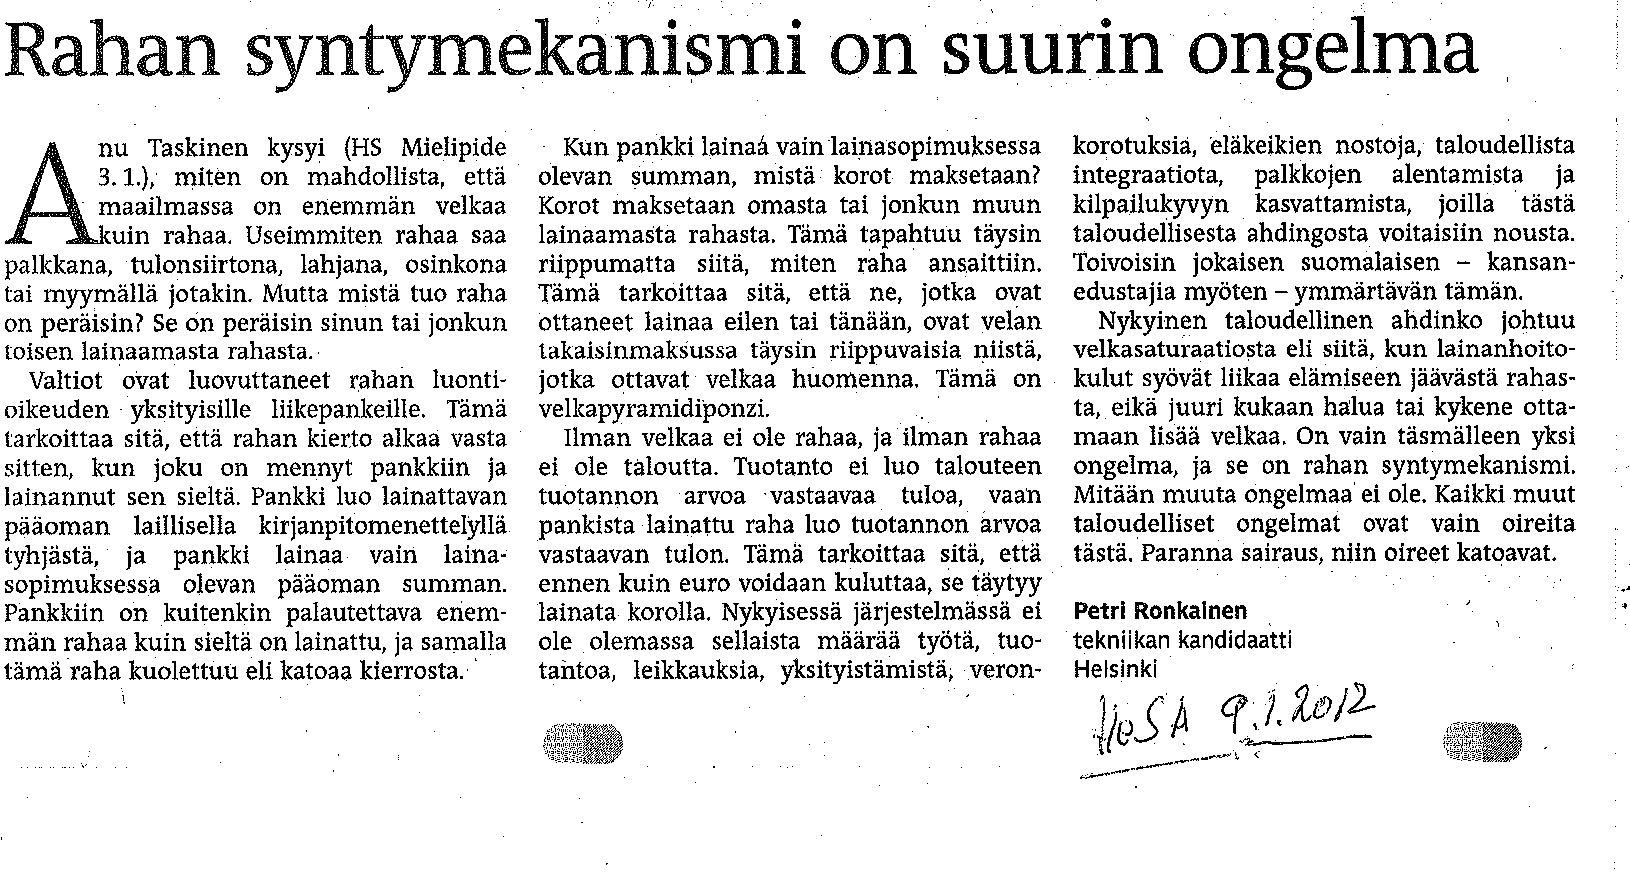 Suomen lähihistoriaa ja kansalaisaktivismin tarpeen todisteita: -  Orgonisaatio